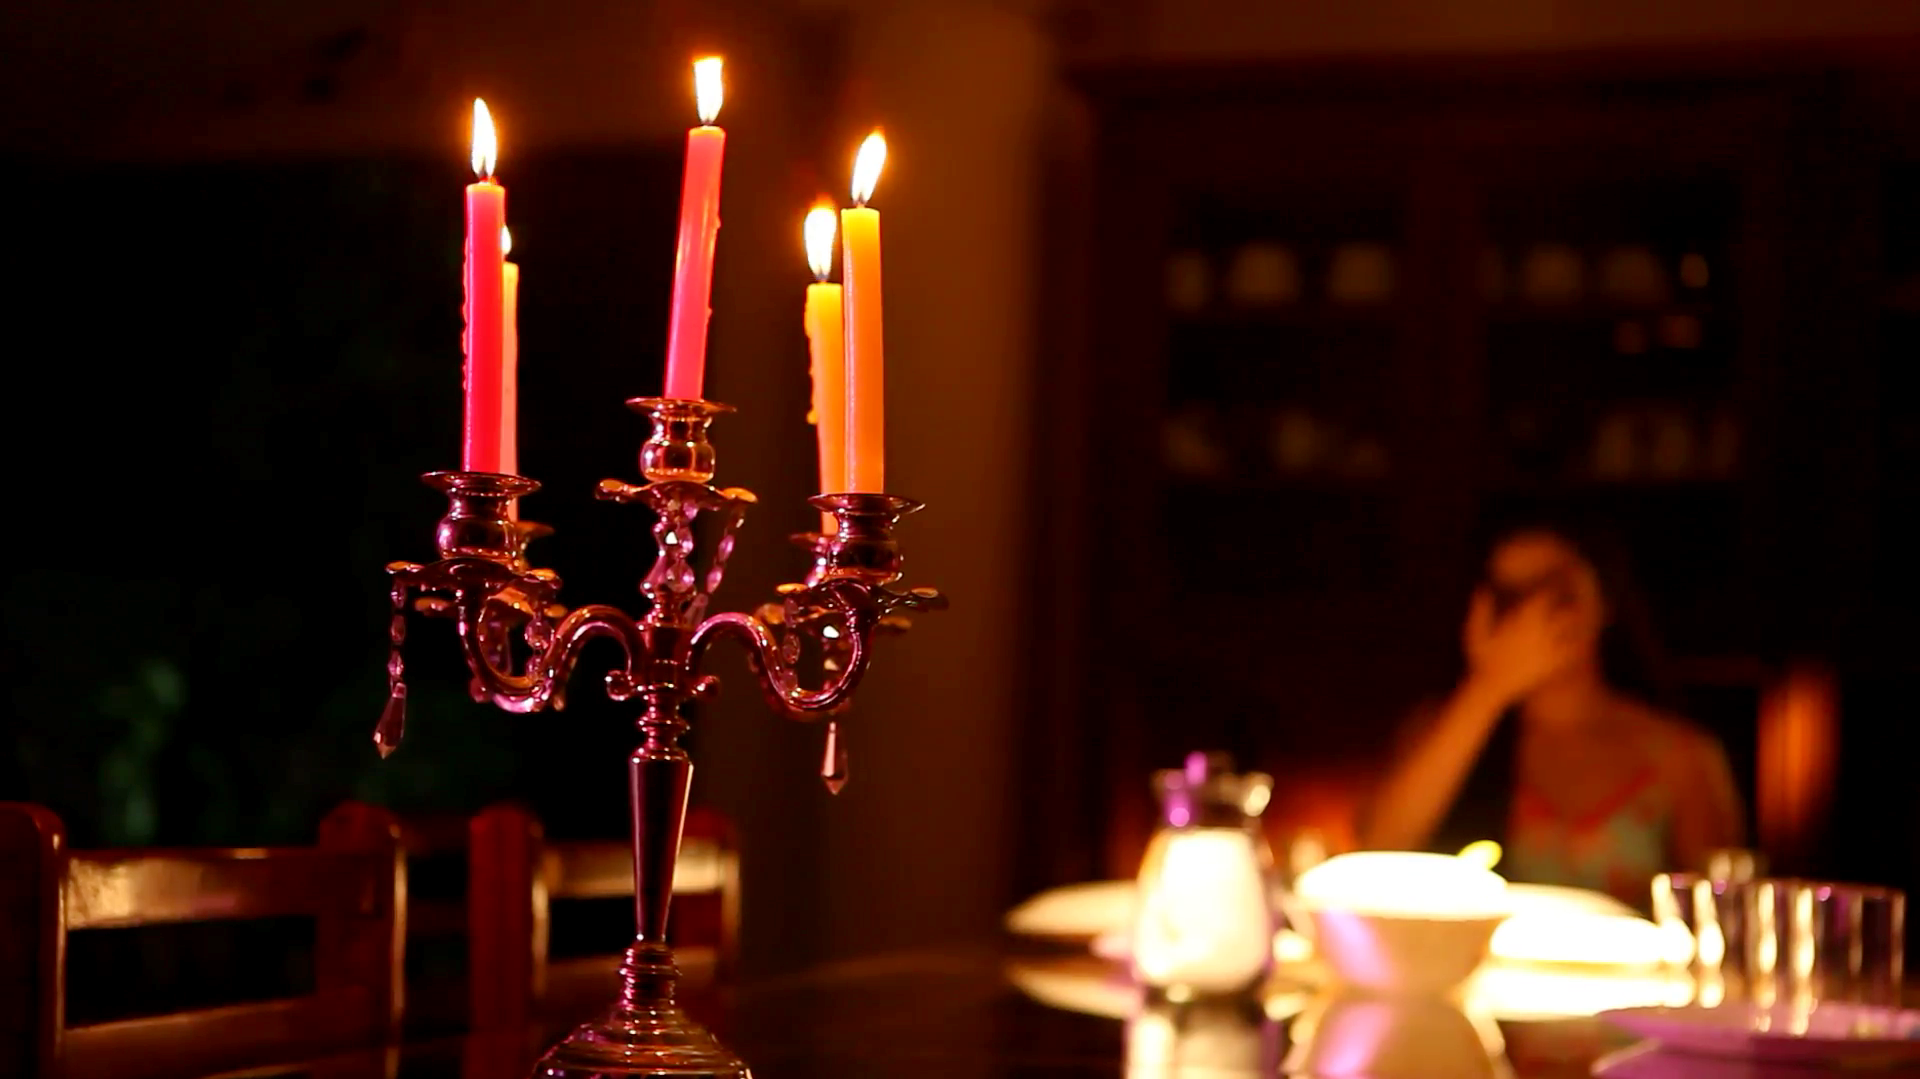 Décoration avec des bougies pour la Saint-Valentin.